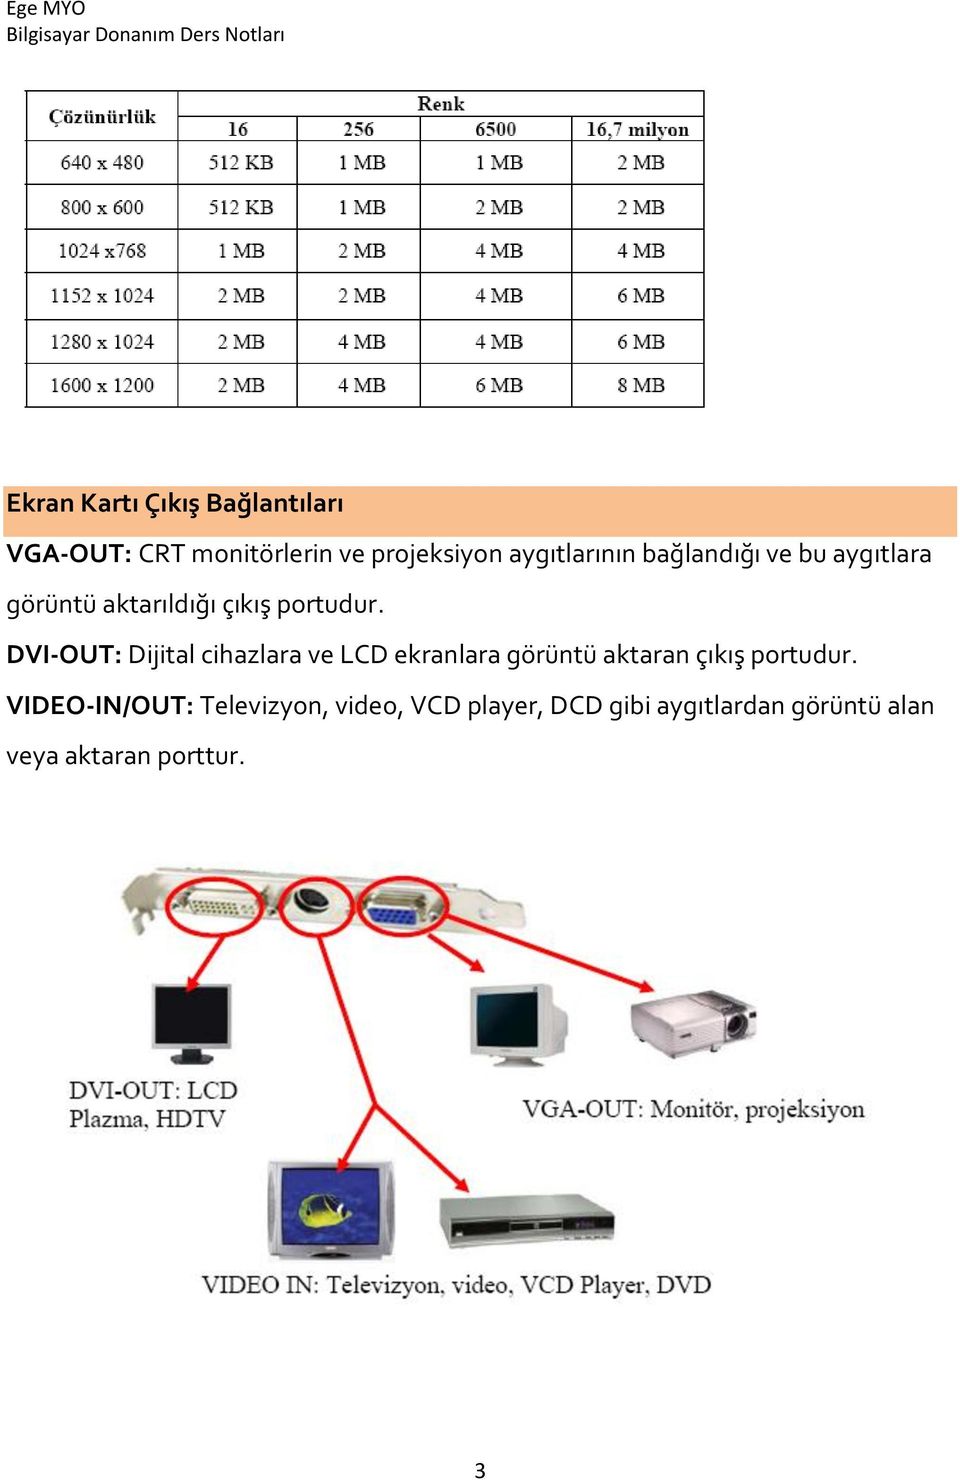 DVI-OUT: Dijital cihazlara ve LCD ekranlara görüntü aktaran çıkış portudur.